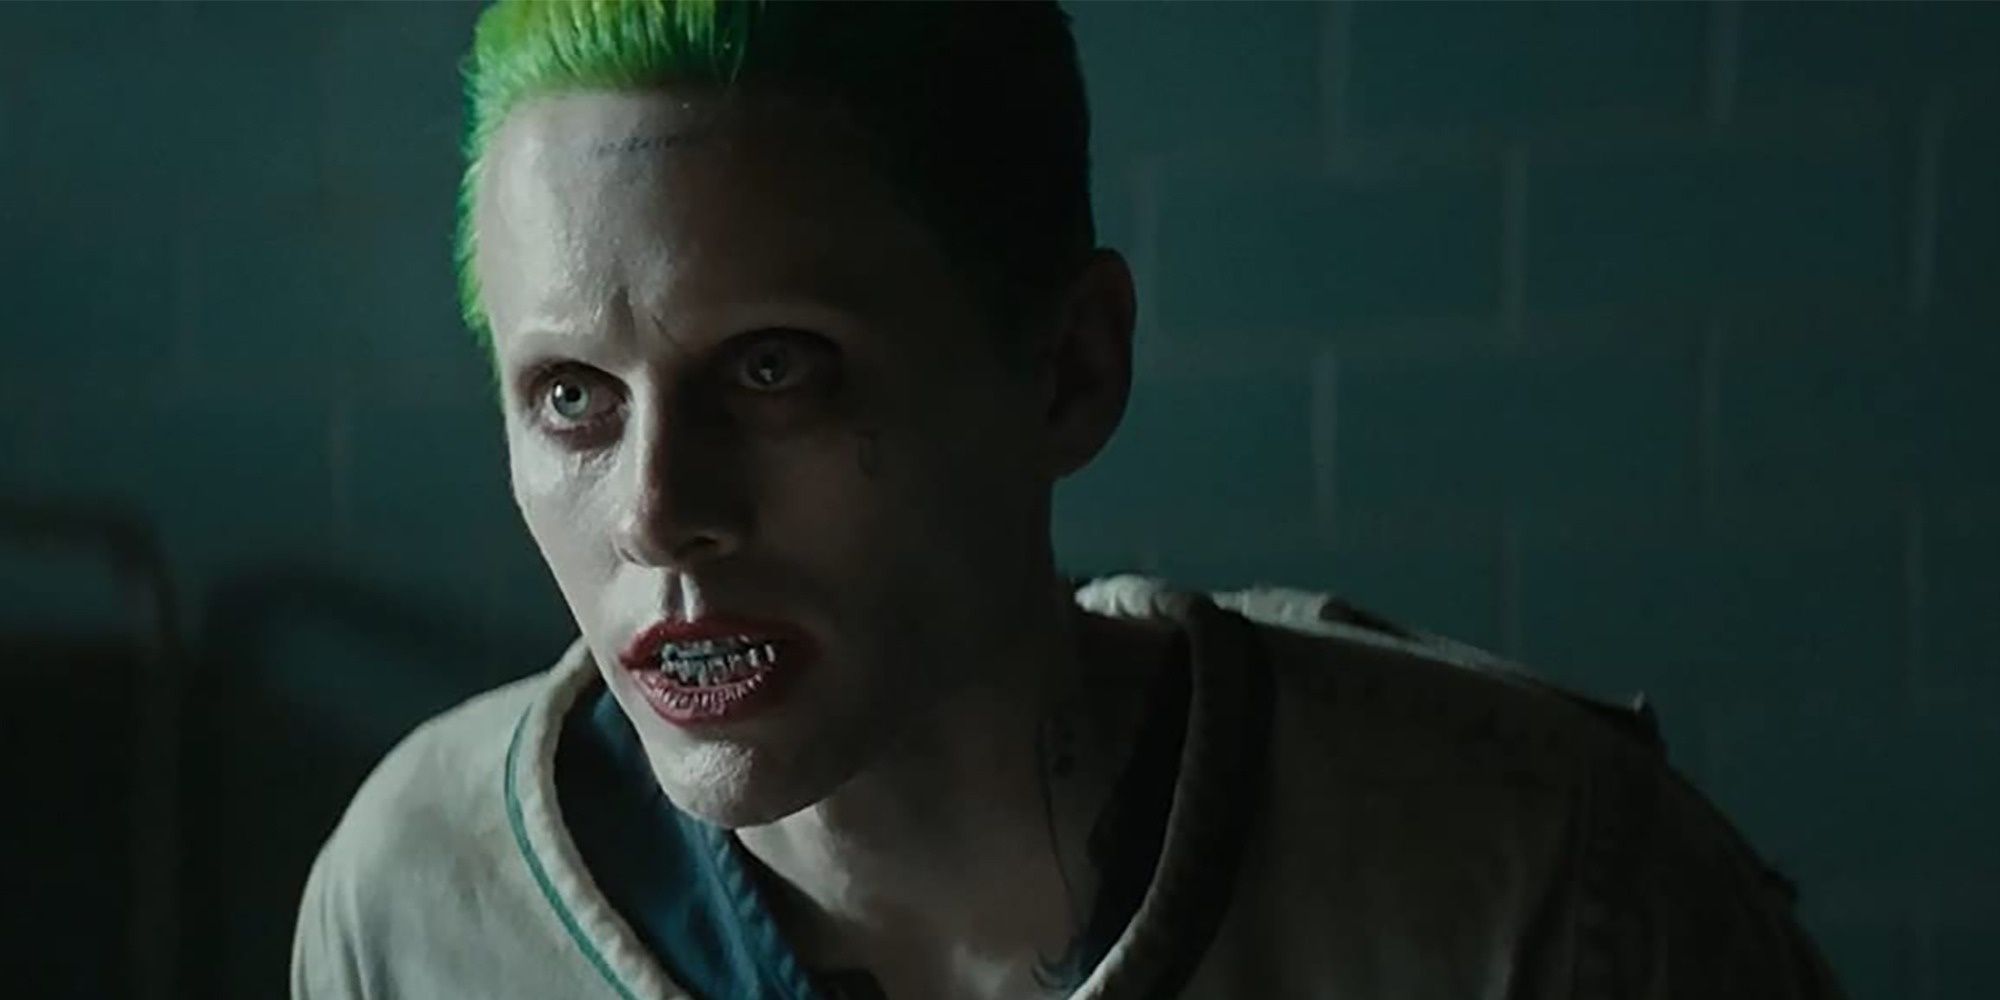 Jared Leto's Joker in a straitjacket